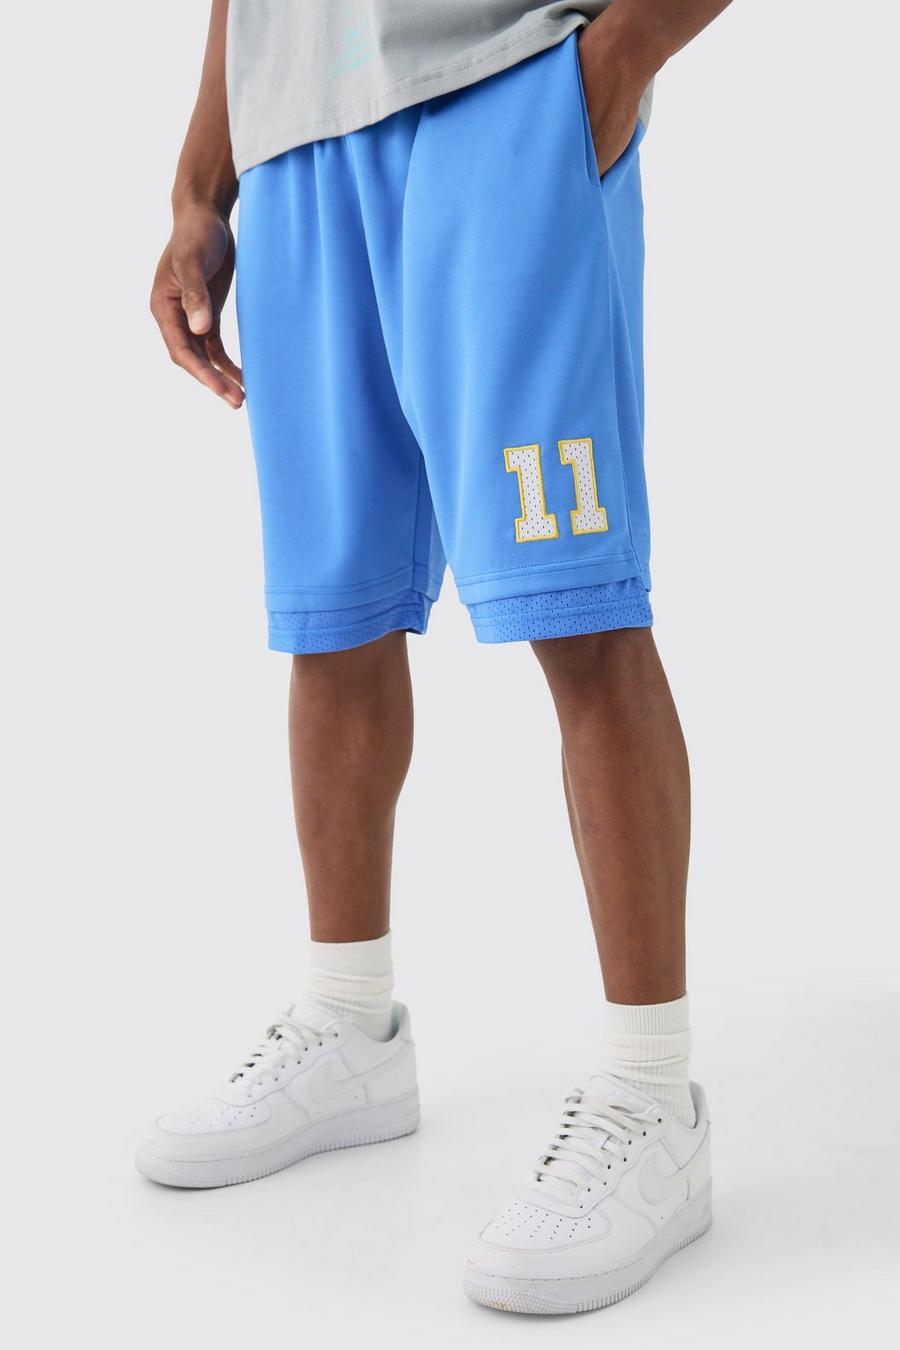 Pantalón corto holgado largo de raso y malla estilo baloncesto, Blue image number 1